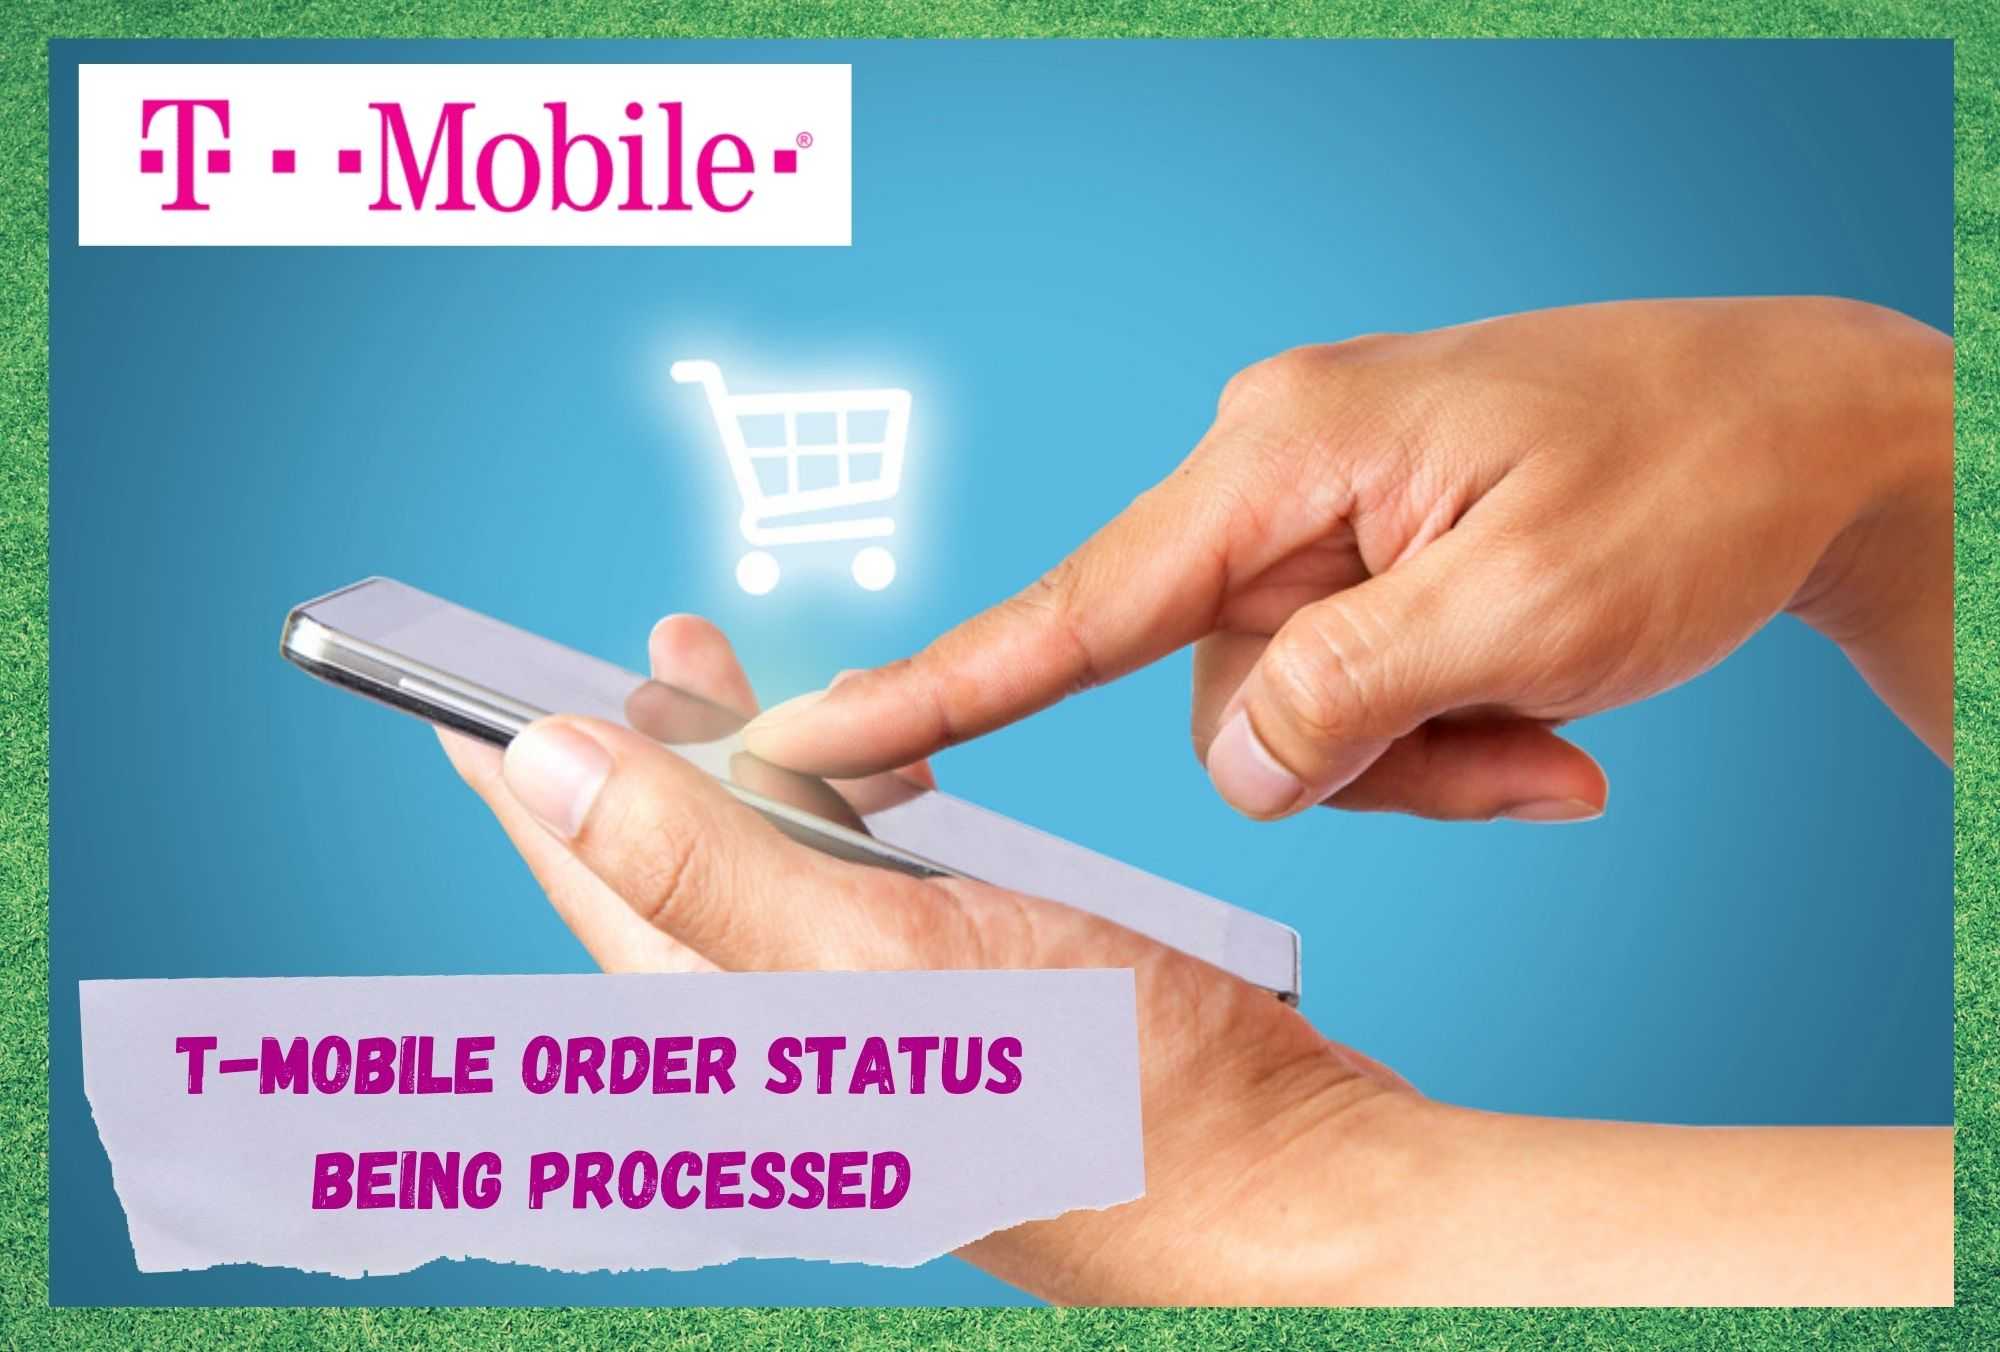 လုပ်ဆောင်နေသည့် T-Mobile Order အခြေအနေကို ပြင်ဆင်ရန် နည်းလမ်း 3 ခု